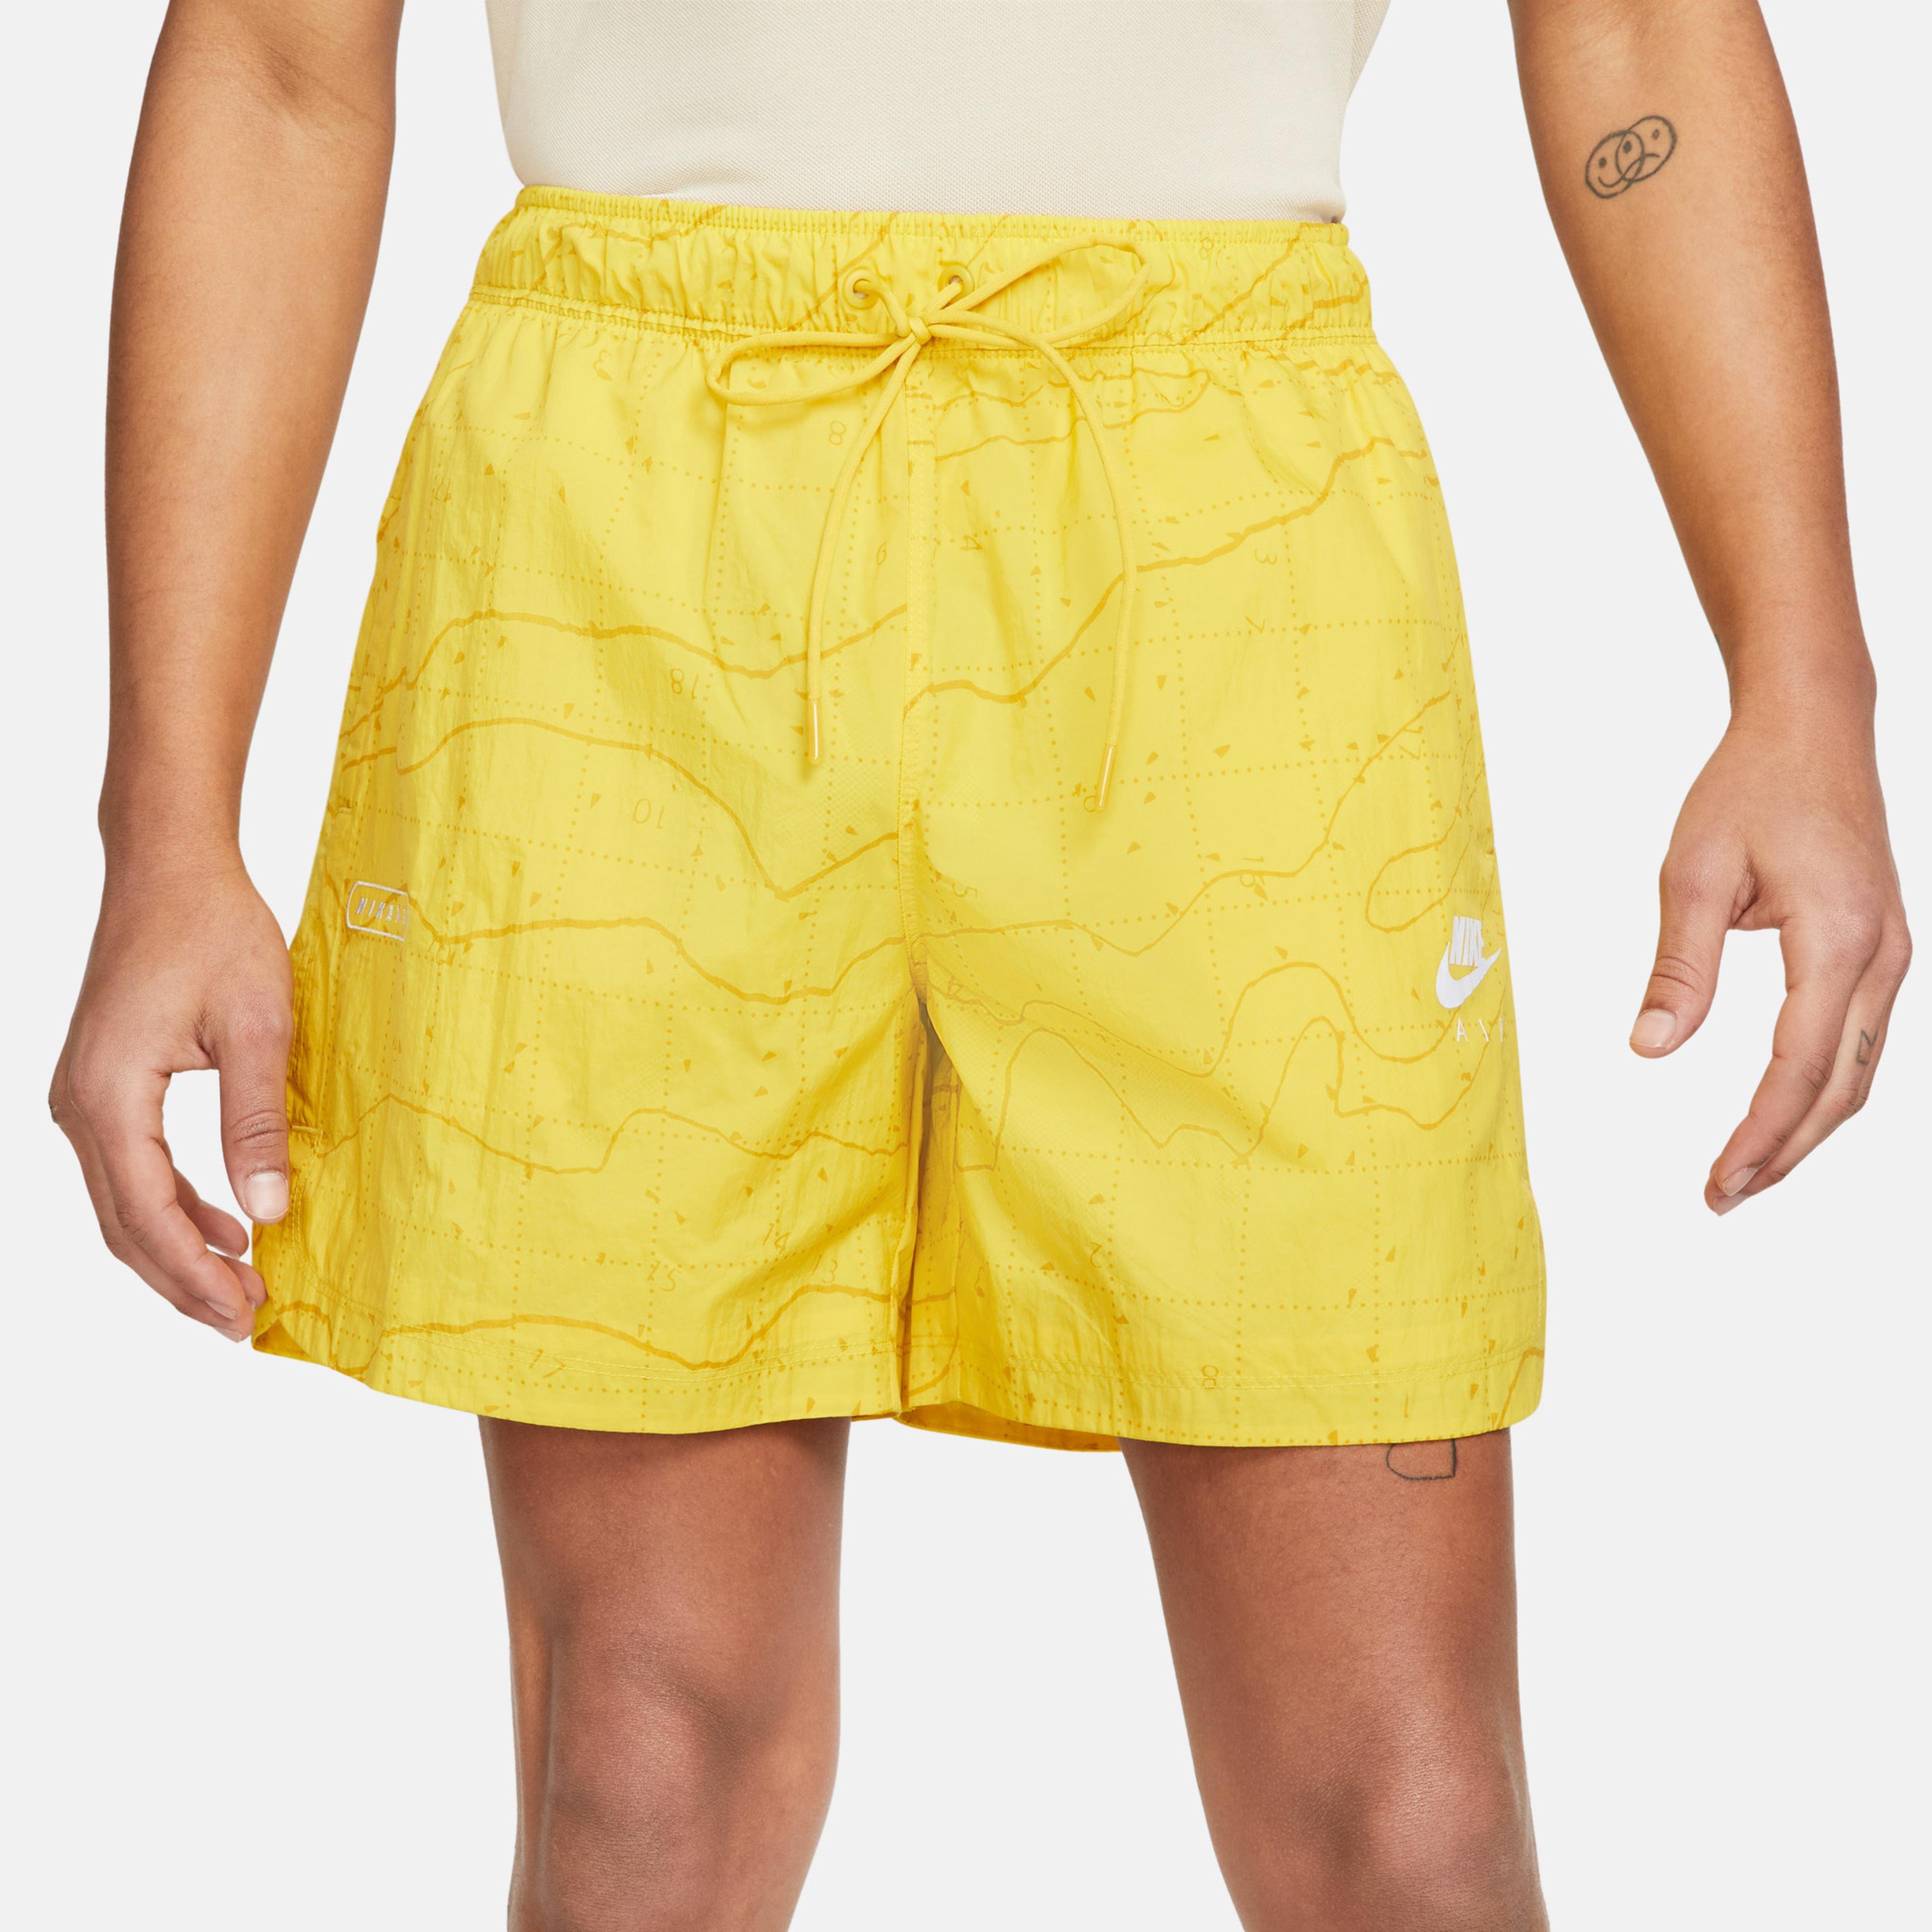 Nike Air Erkek Sarı Şort